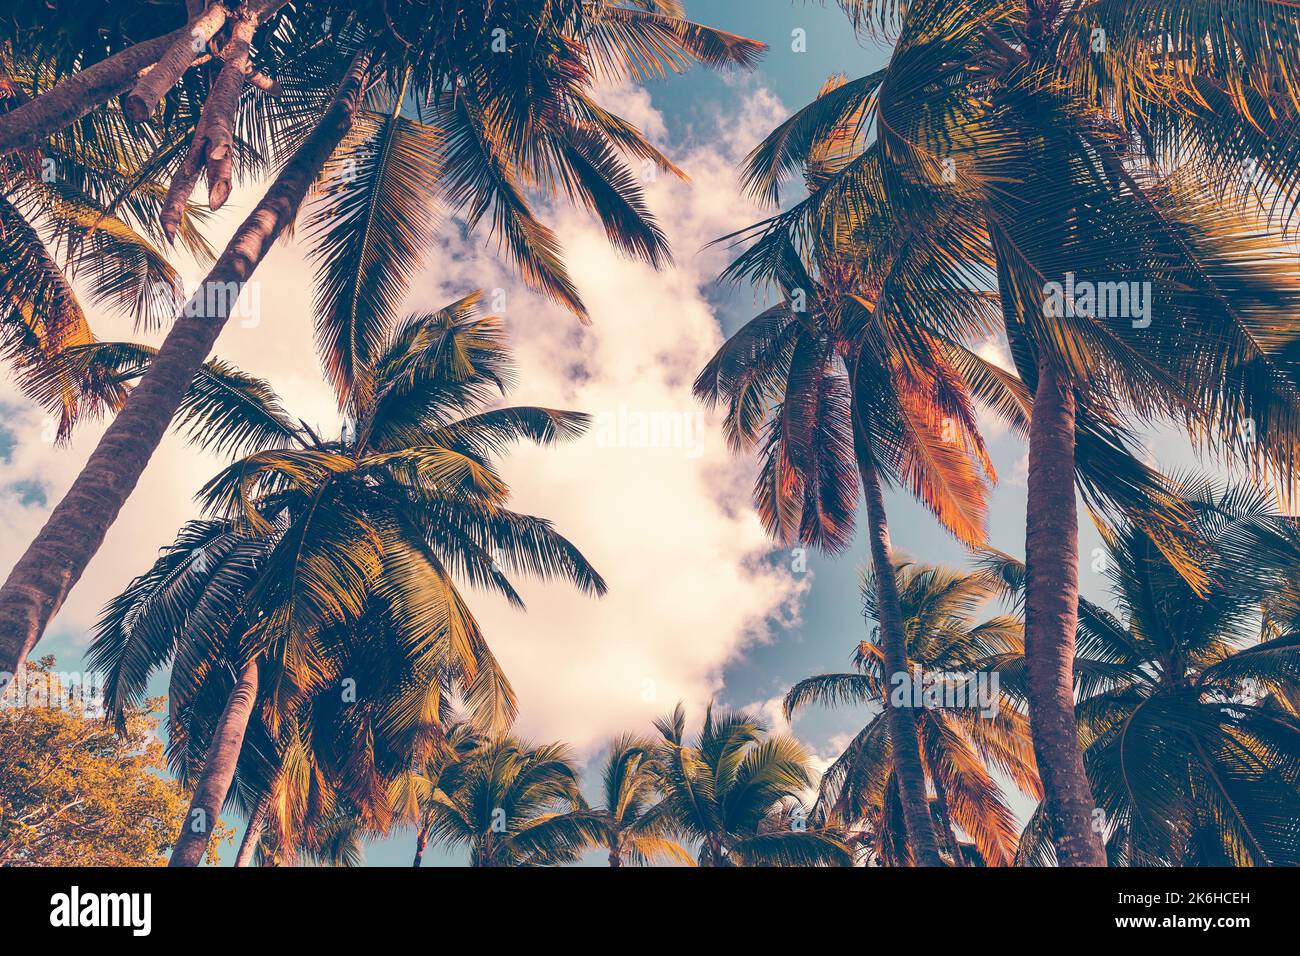 Stilisierter Fotohintergrund mit Kokospalmen unter bewölktem Himmel. Vintage-Foto mit altherlivem Tonwertfilter-Effekt Stockfoto